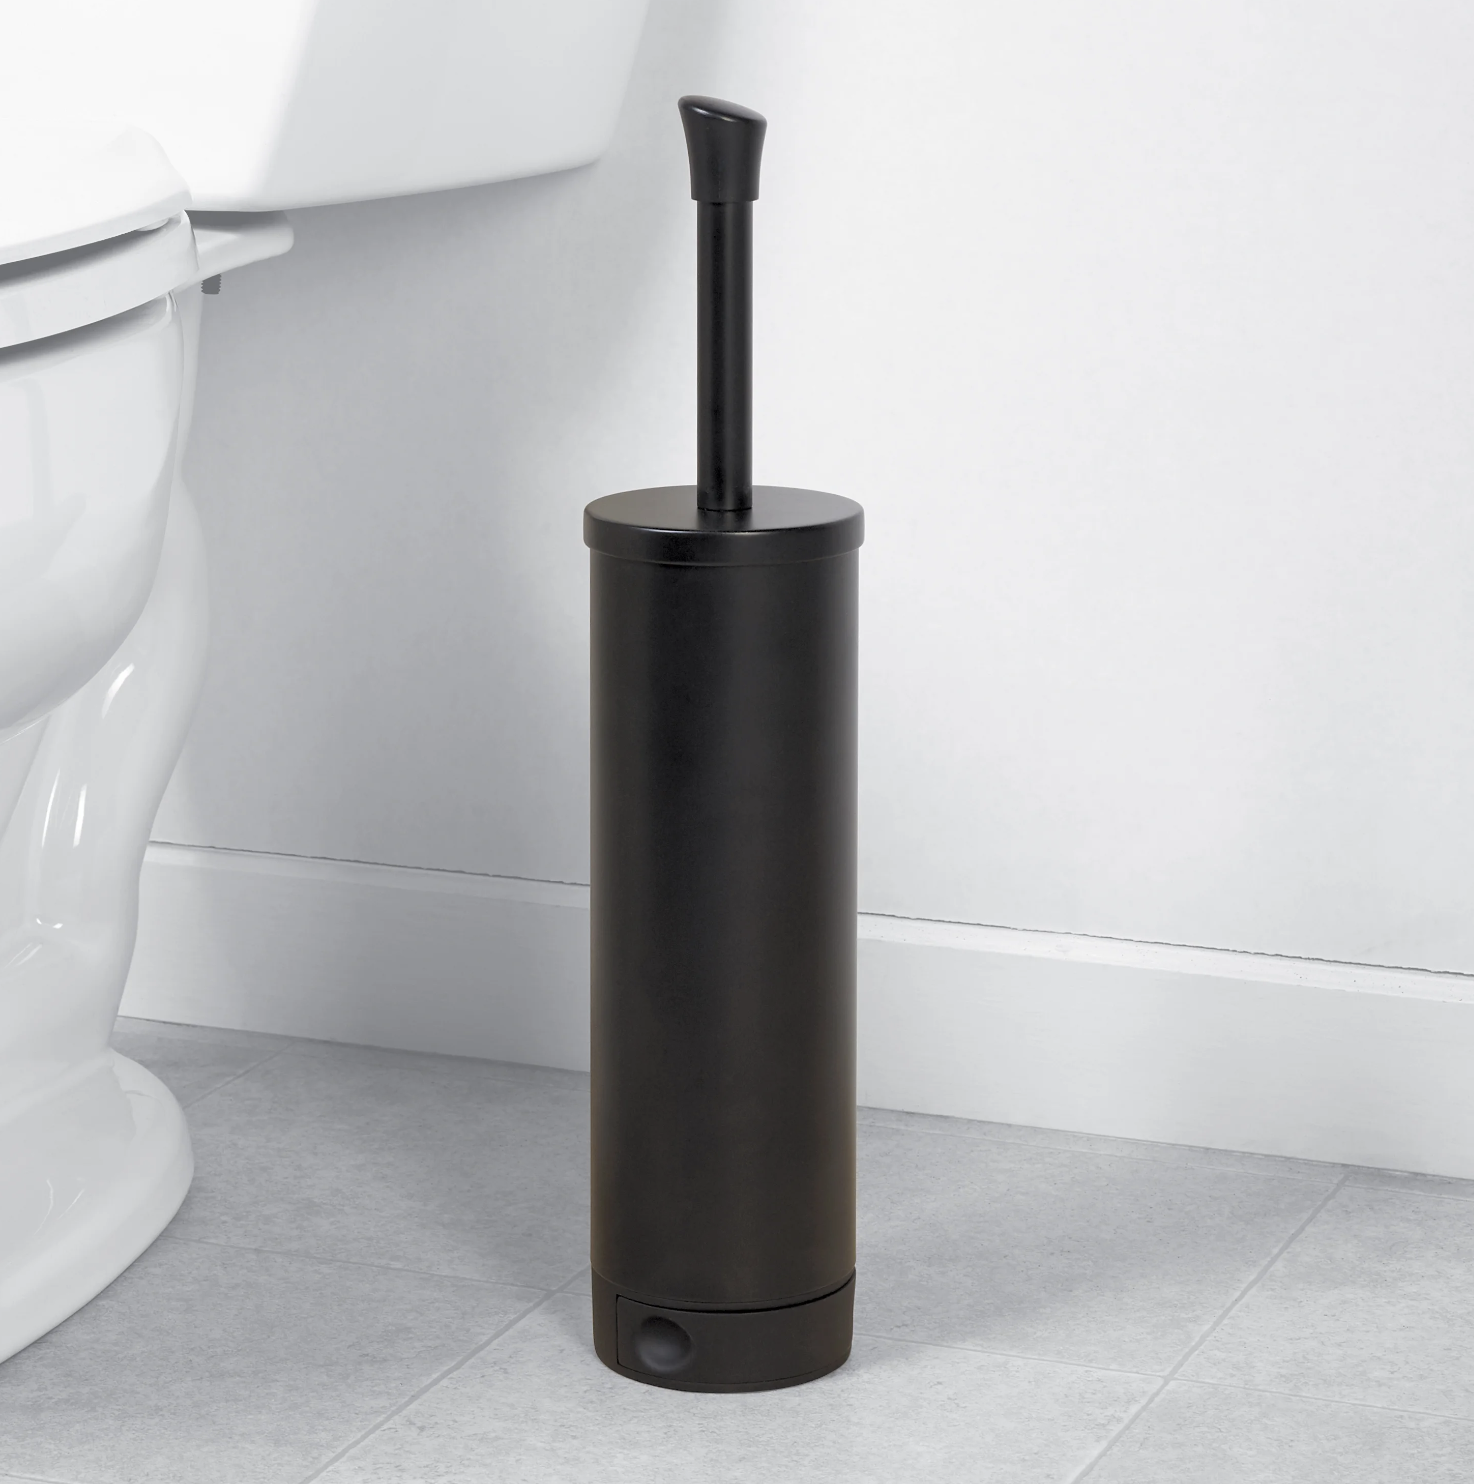 the black toilet brush holder